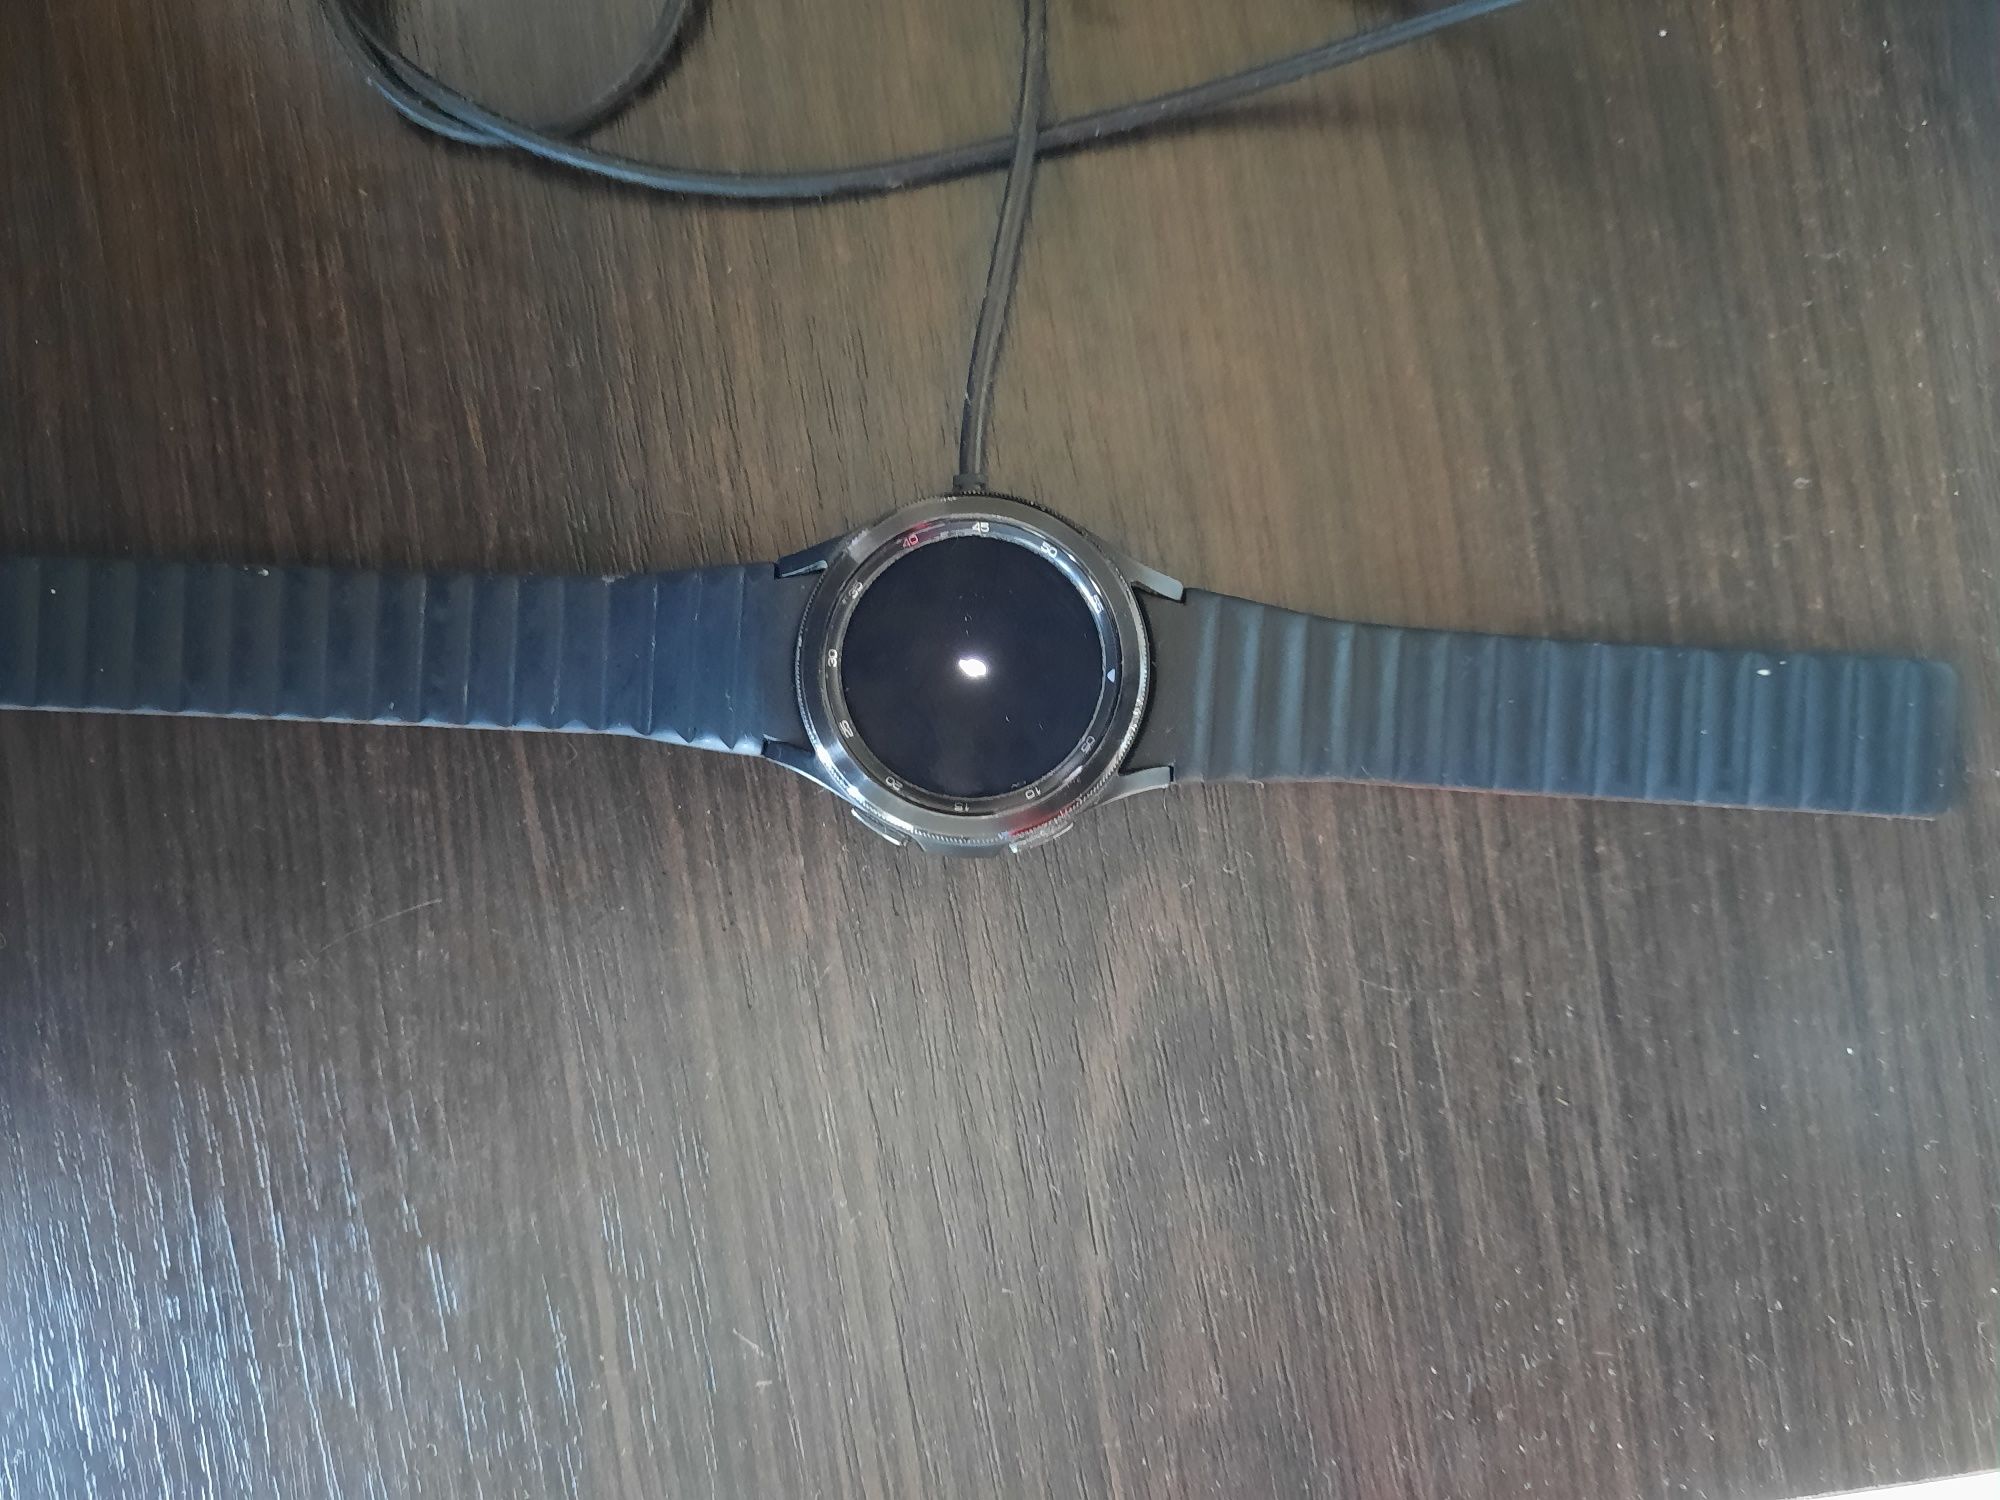 Продама часы Смарт-годинник Samsung Galaxy Watch 4 Classic 42mm eSIM